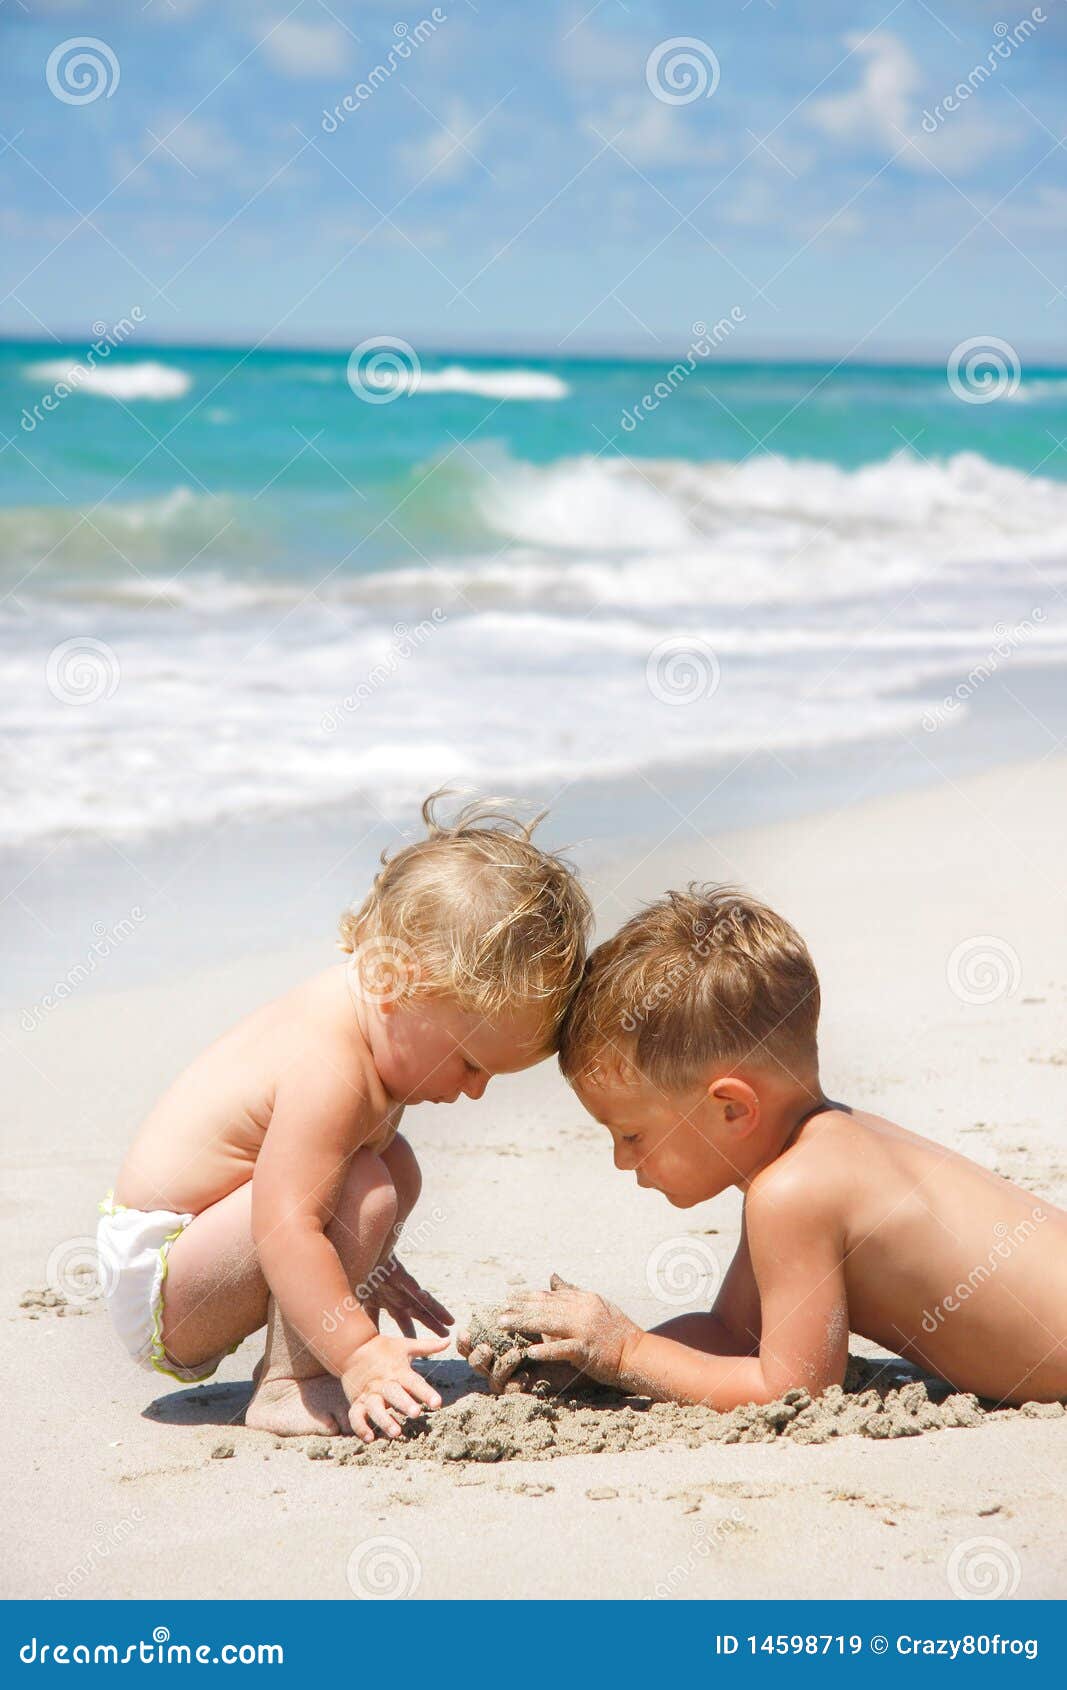 за голыми детьми на пляже фото 1